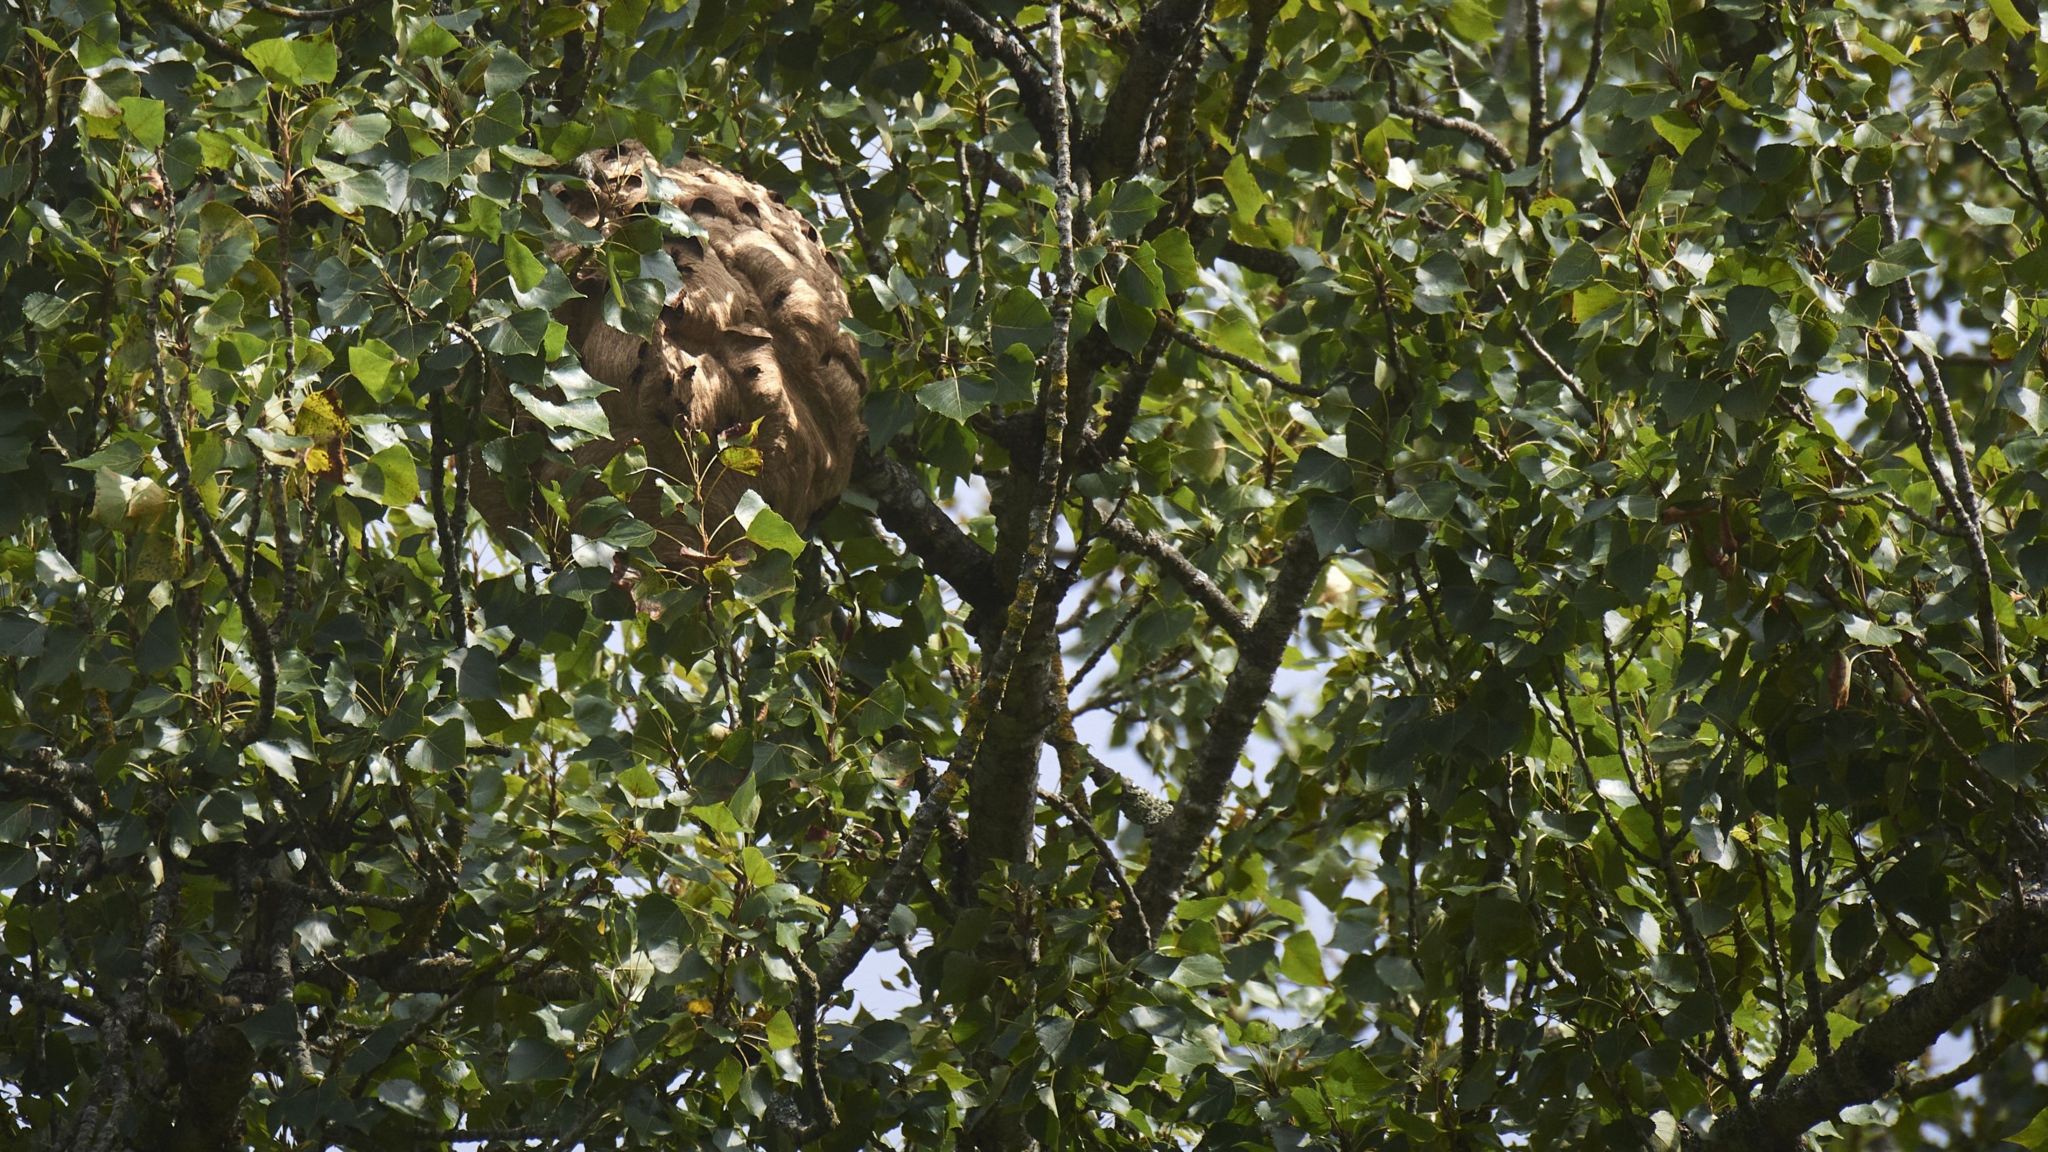 Asian hornet nest in a tree in Spain